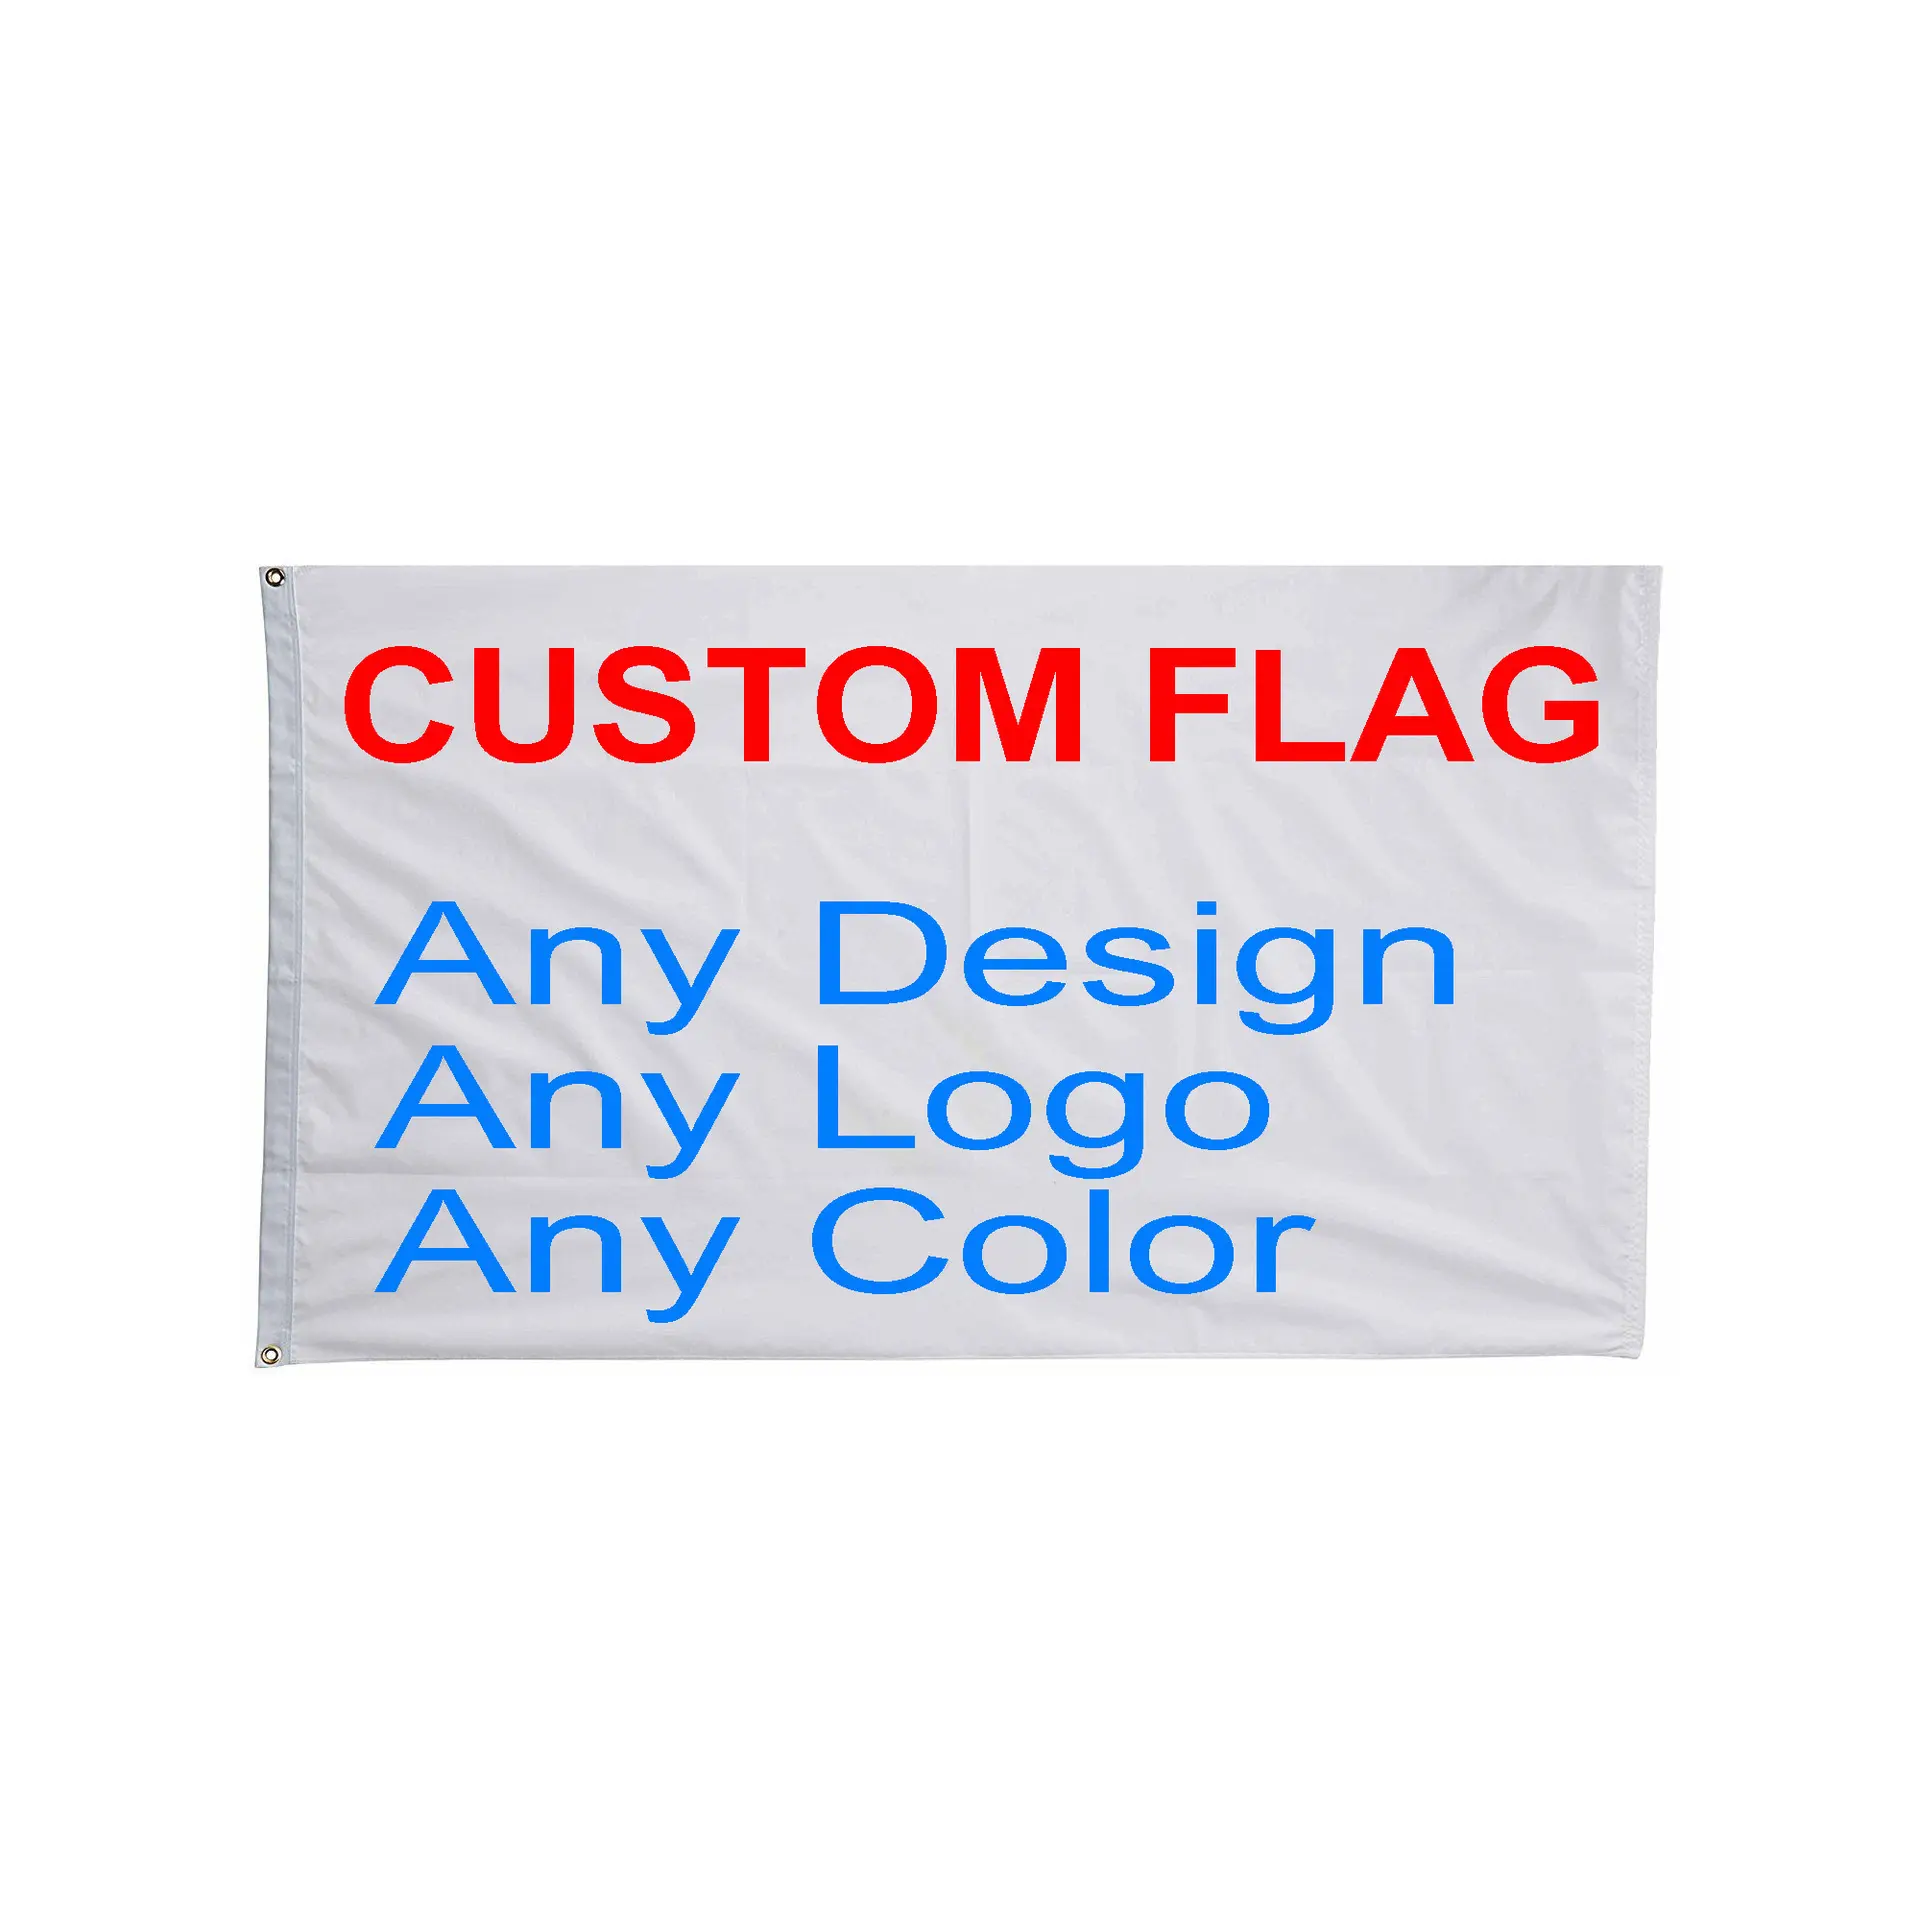 Flaggen hersteller 48h Schnelle Lieferung Drucken Sie Ihr eigenes Logo Design Wörter Werbung Flagge 3x5 Ft Custom ized Flags Banner